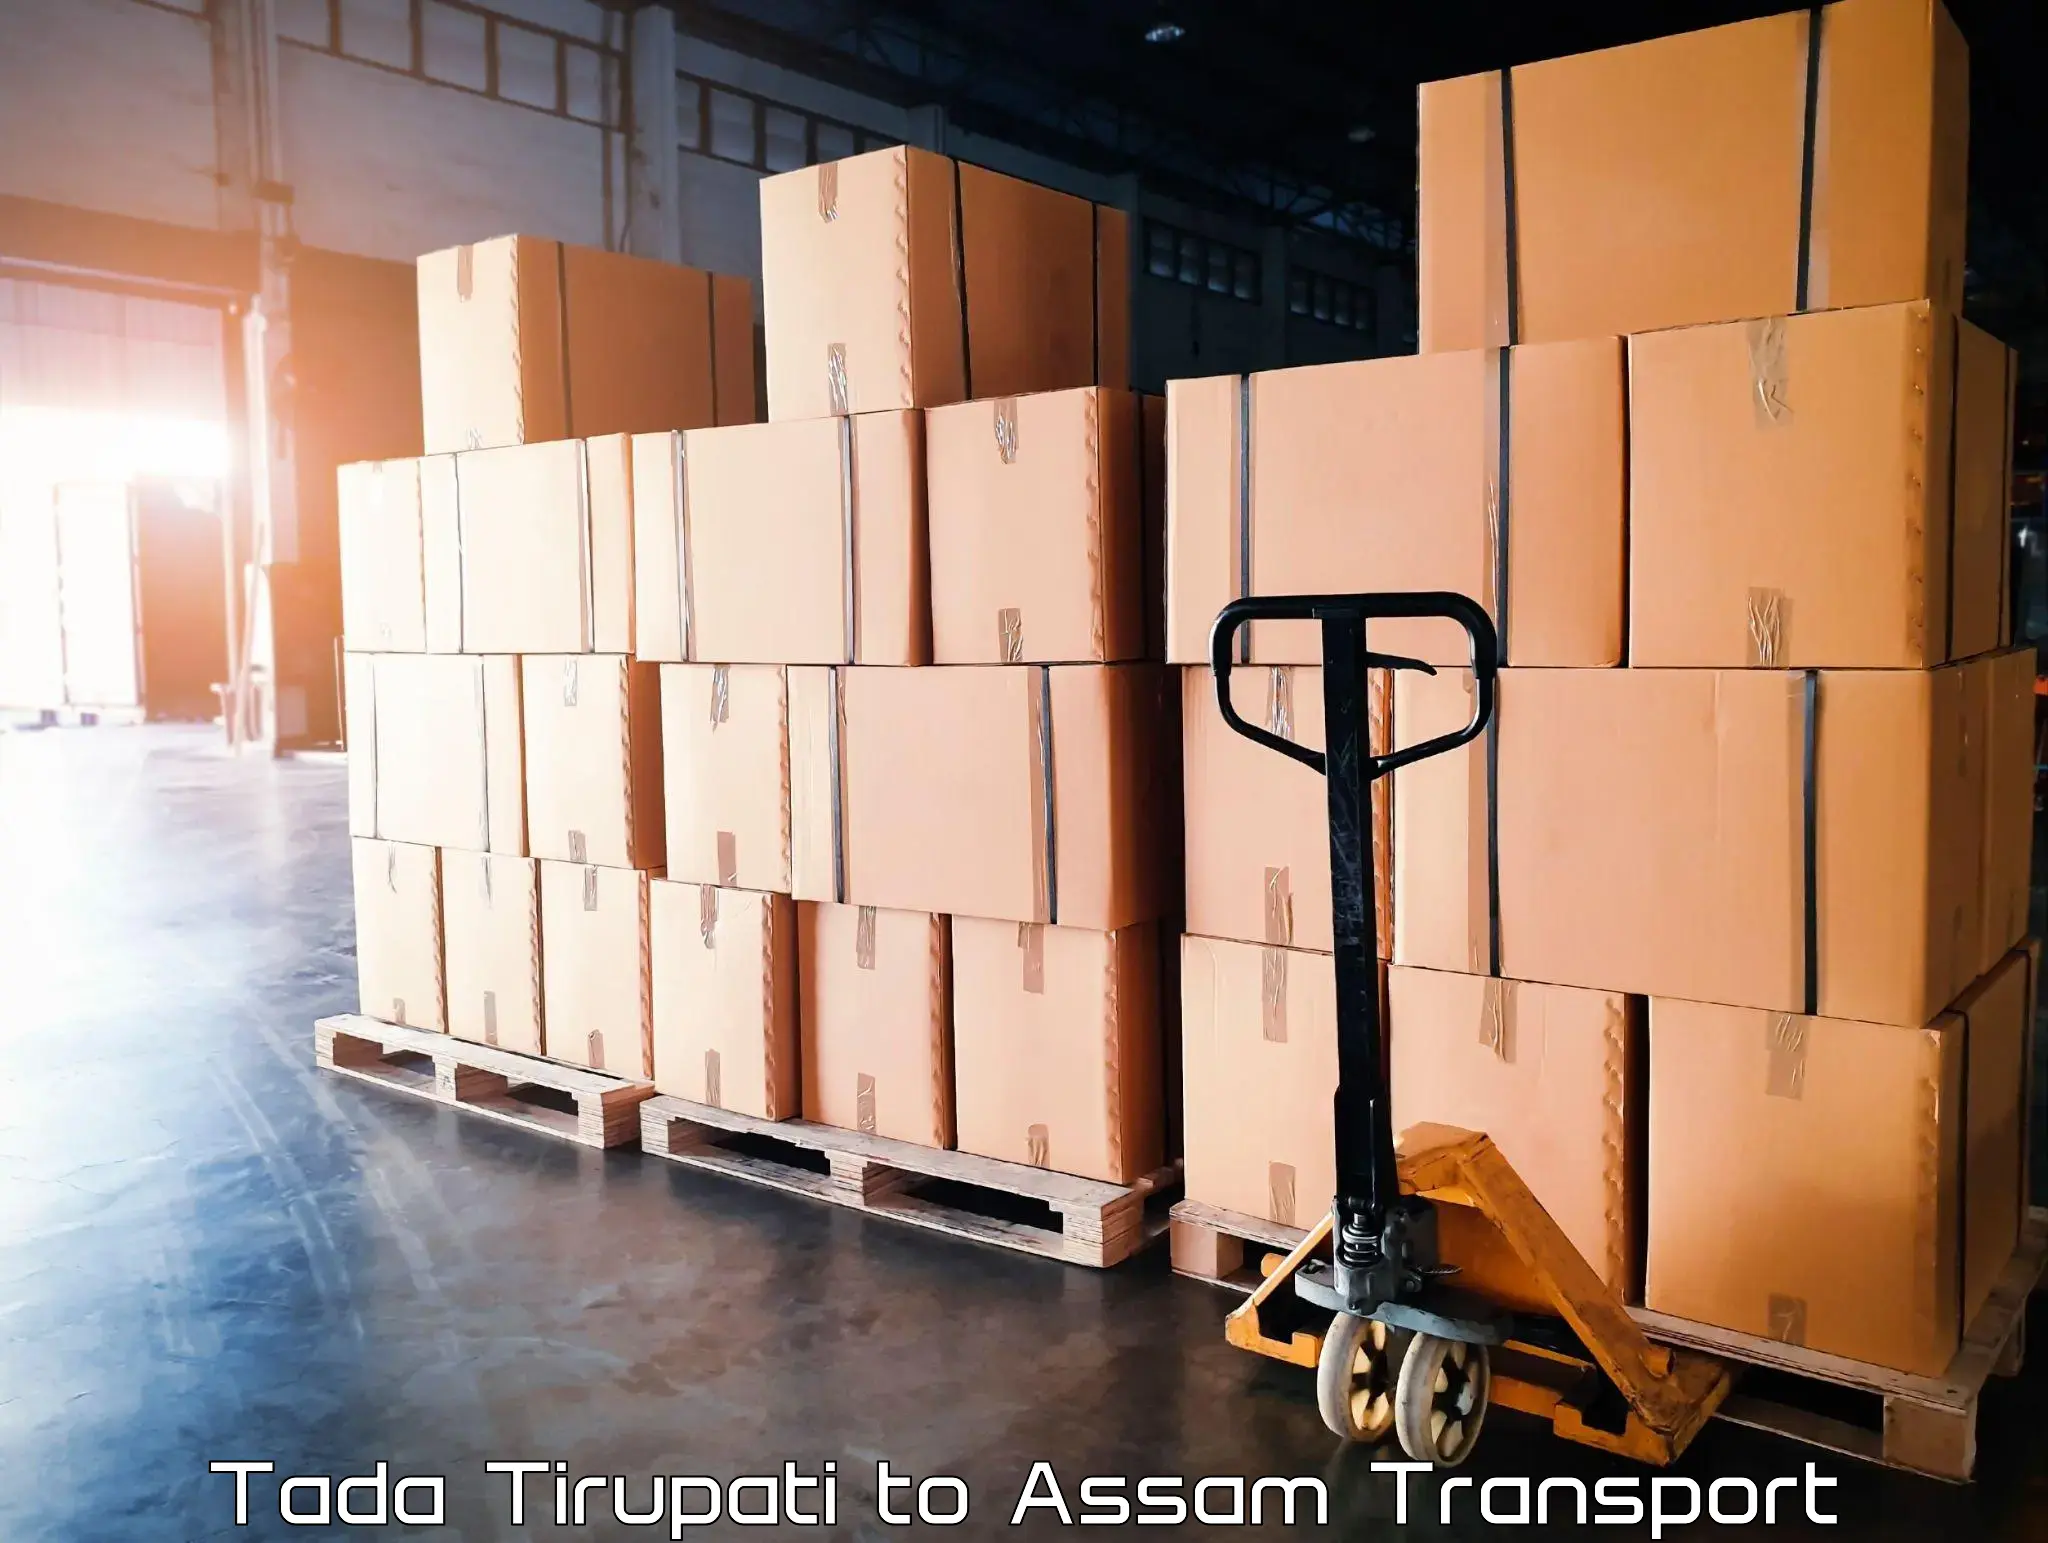 Goods delivery service Tada Tirupati to Hajo